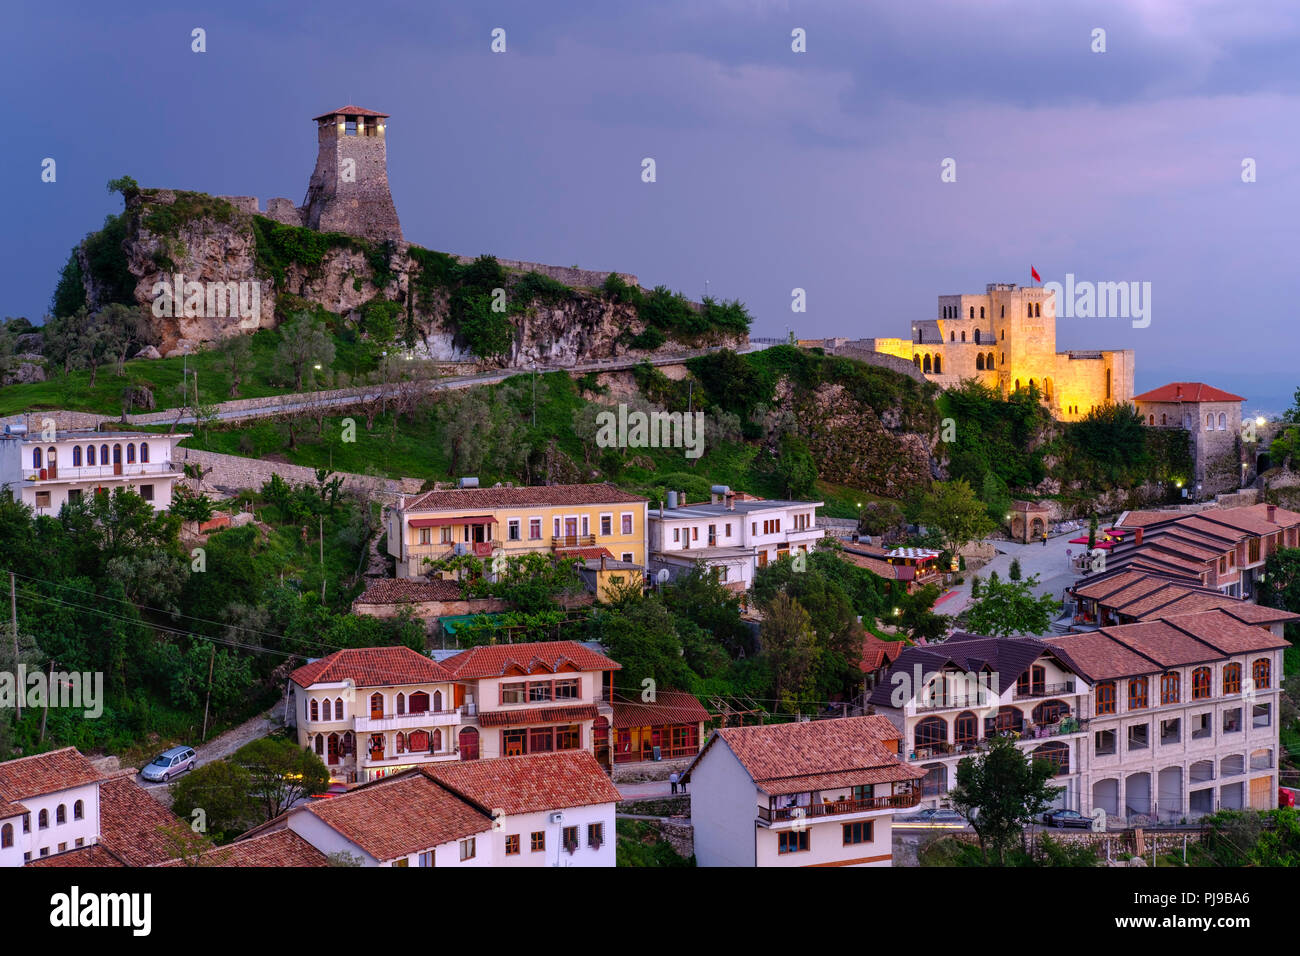 La forteresse et le Musée de Skanderbeg, Crépuscule, Kruja, Krujë, Durrës Qar, Durres, Albanie Banque D'Images